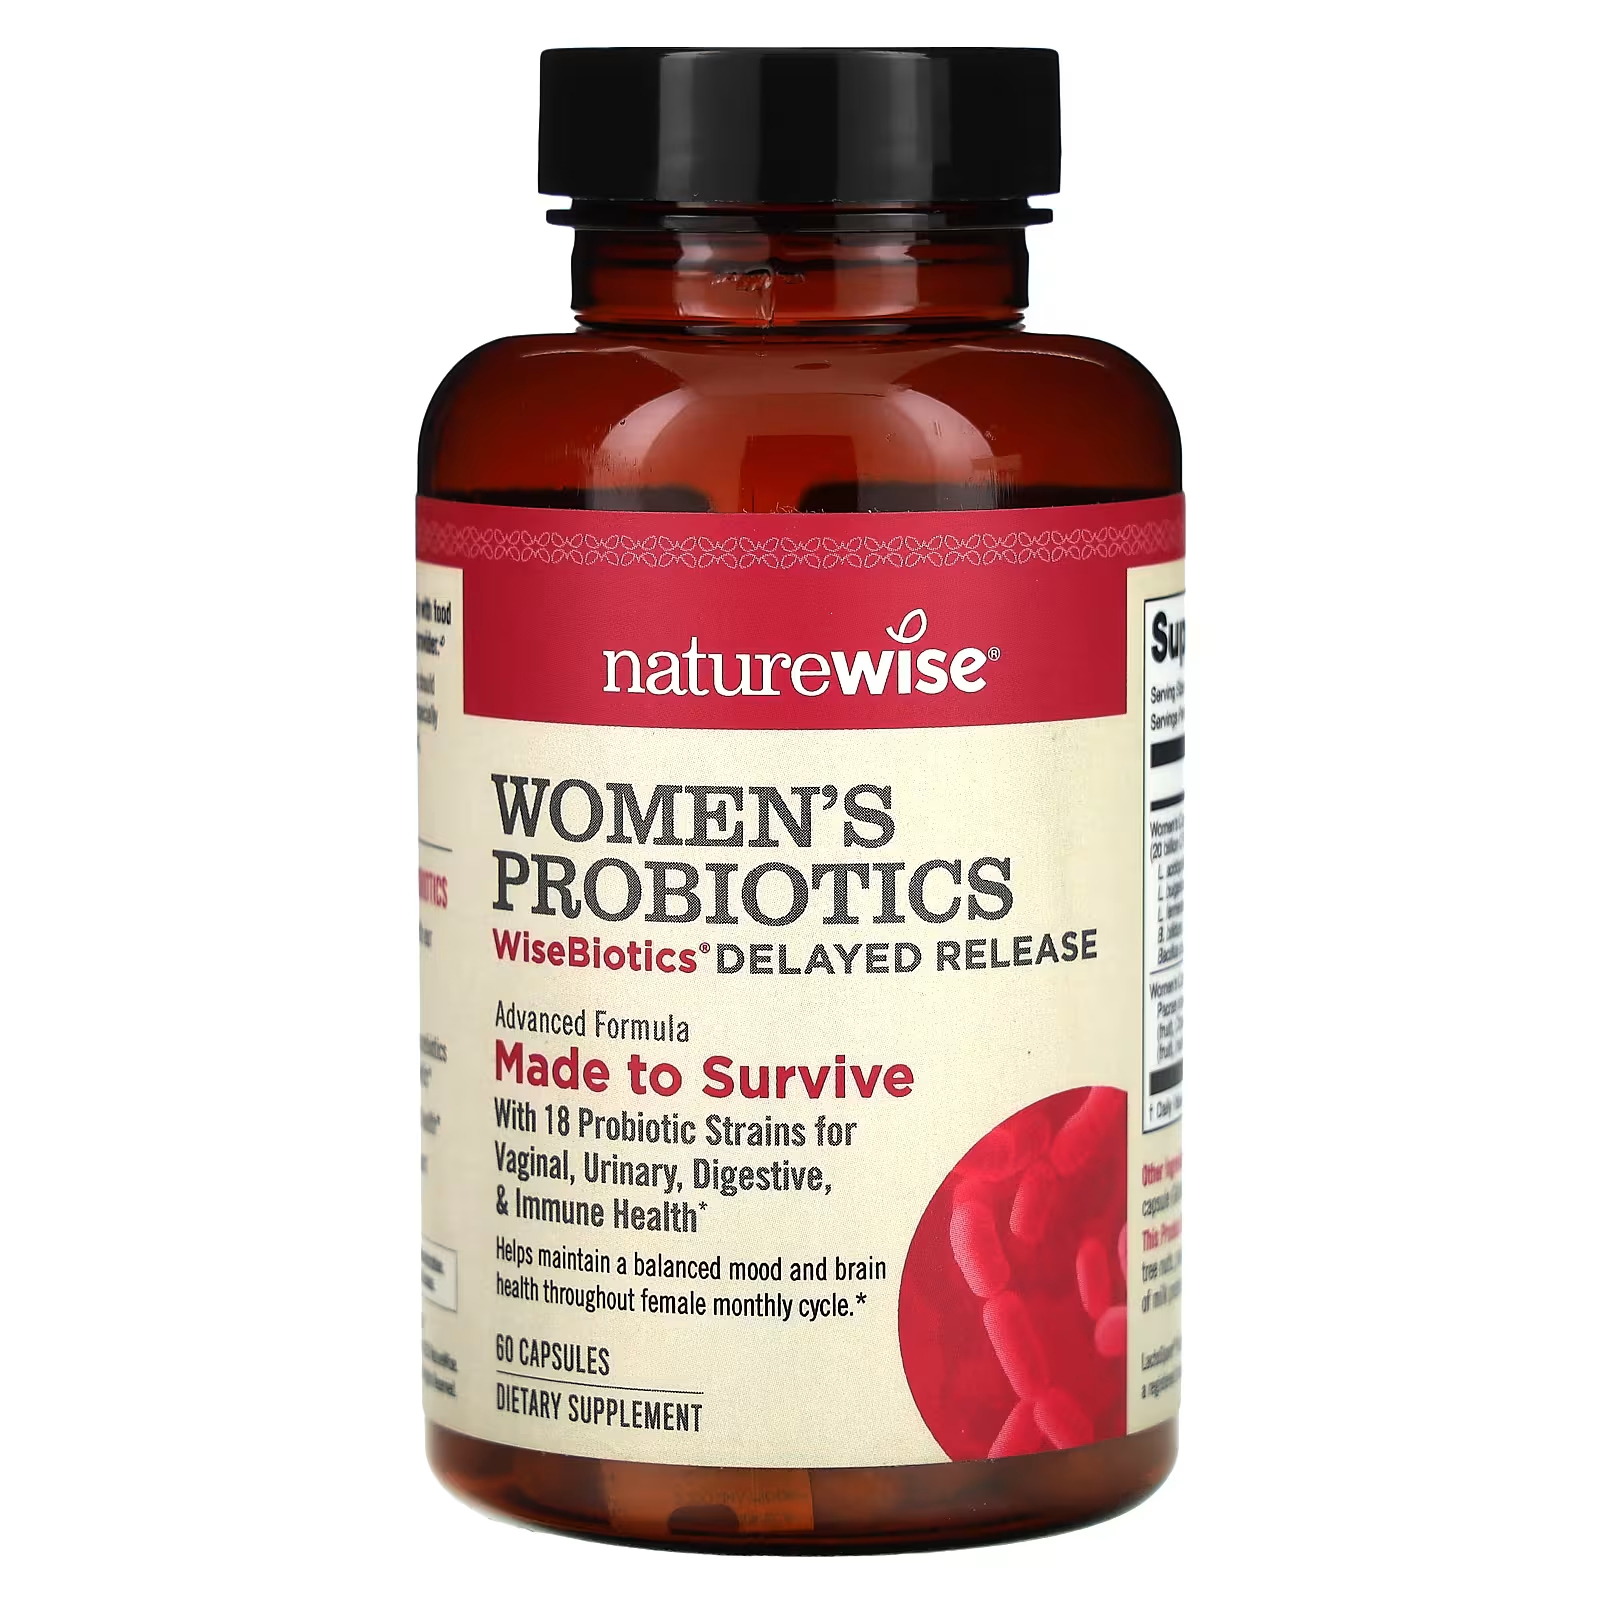 Женские пробиотики WiseBiotics с отсроченным выпуском, 60 капсул NatureWise naturewise maximum care пробиотики с замедленным высвобождением 40 капсул